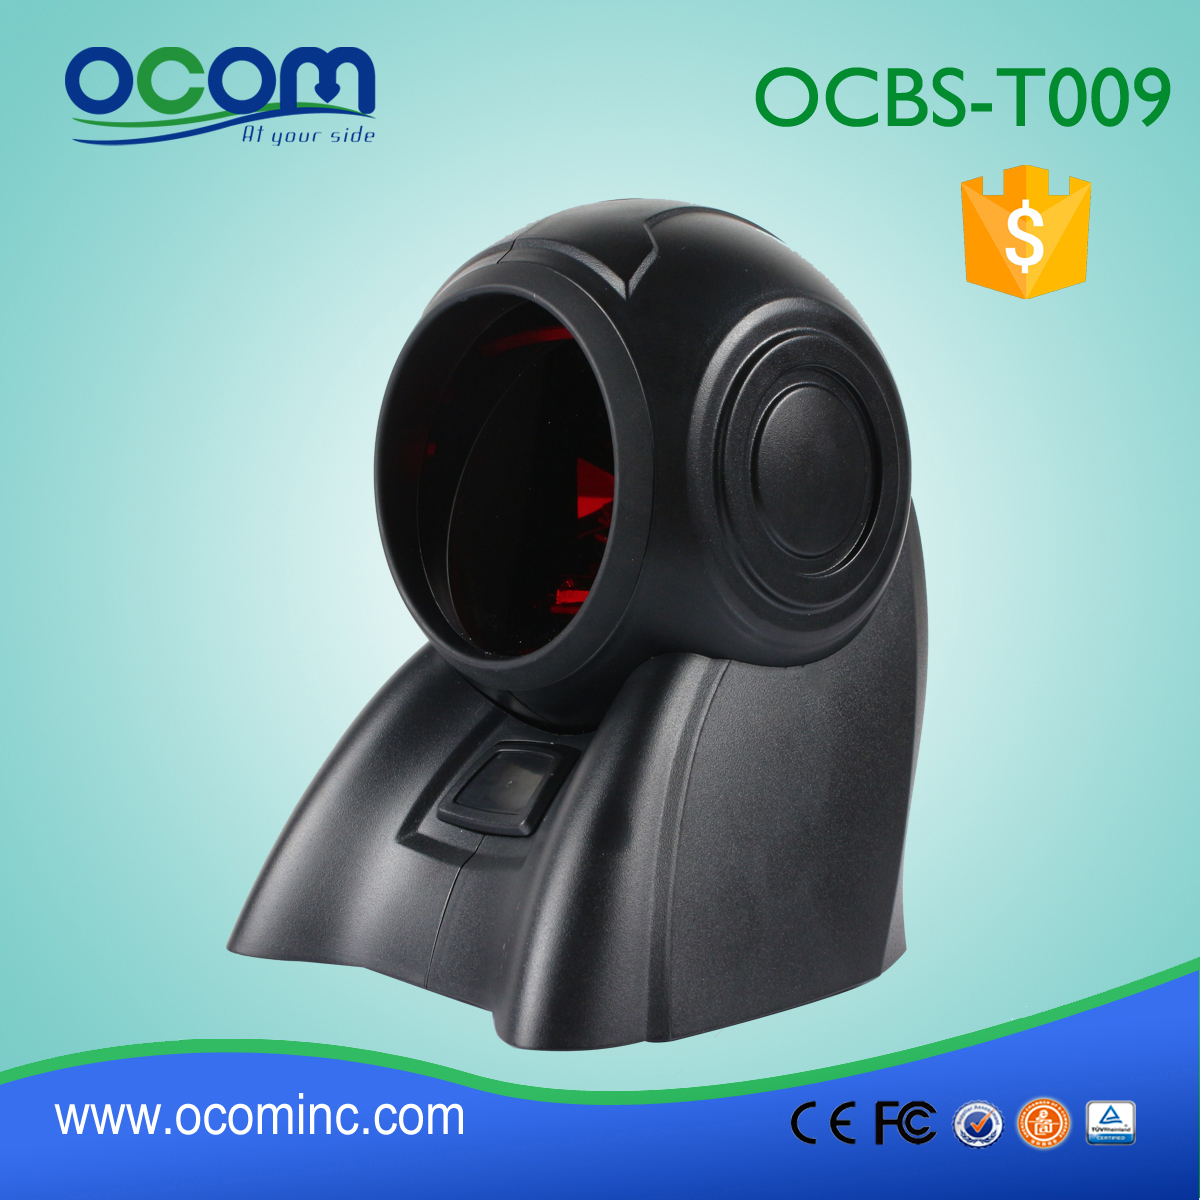 (OCBS-T009) Klasyczny, wielokierunkowy laserowy skaner kodów kreskowych 1D